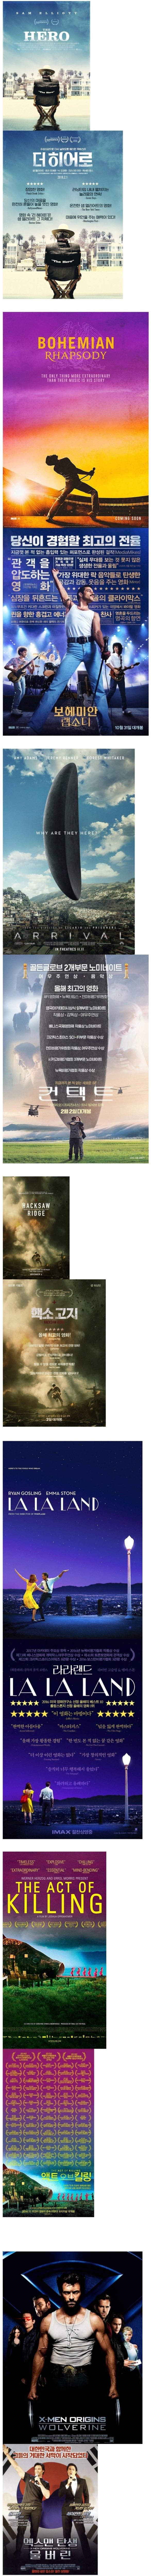 한국화 당해버린 영화 포스터